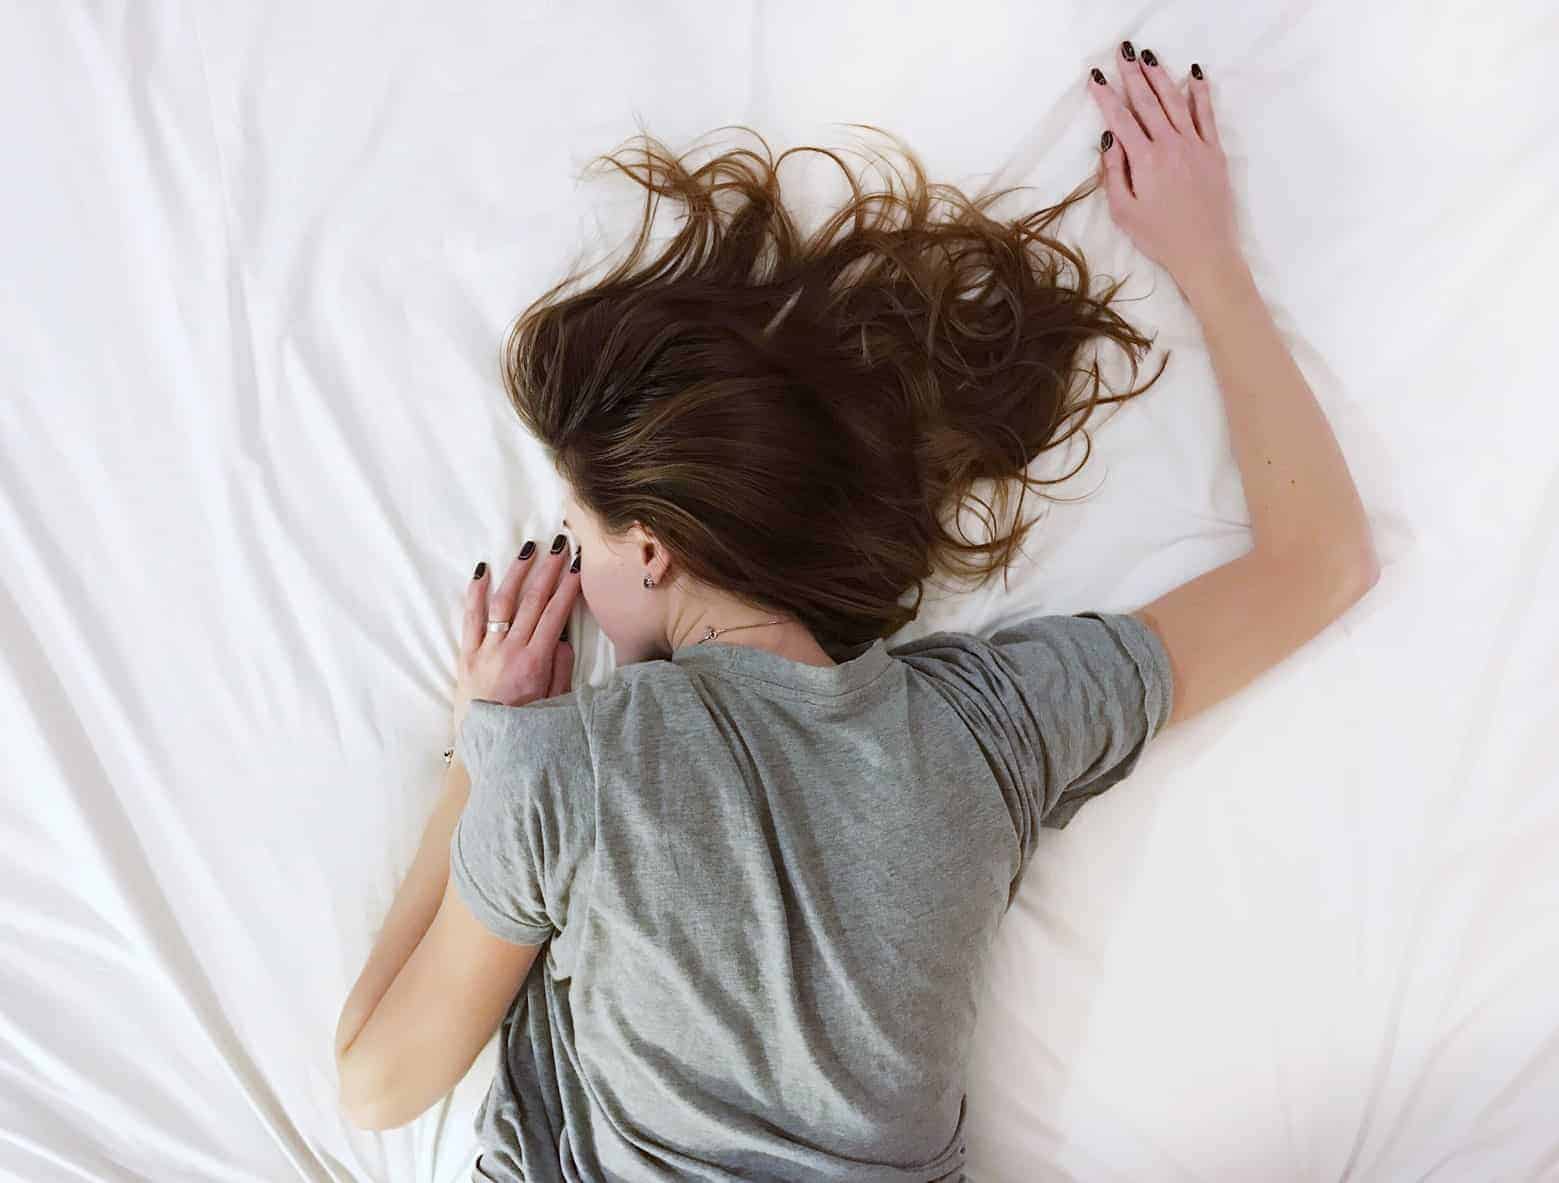  Heeft het matras invloed op de slaapkwaliteit?